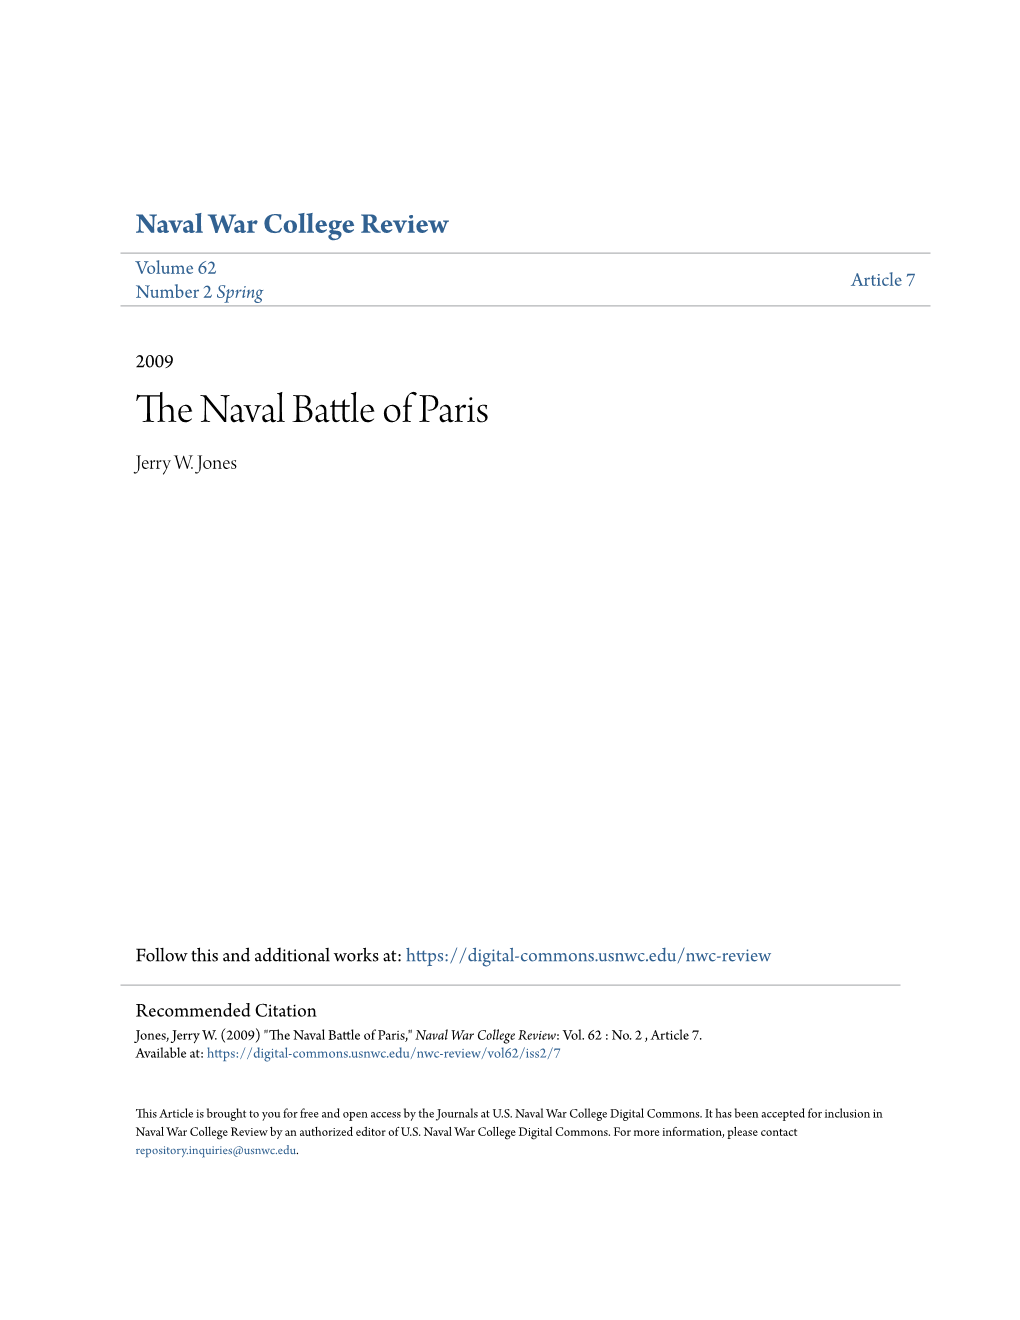 The Naval Battle of Paris